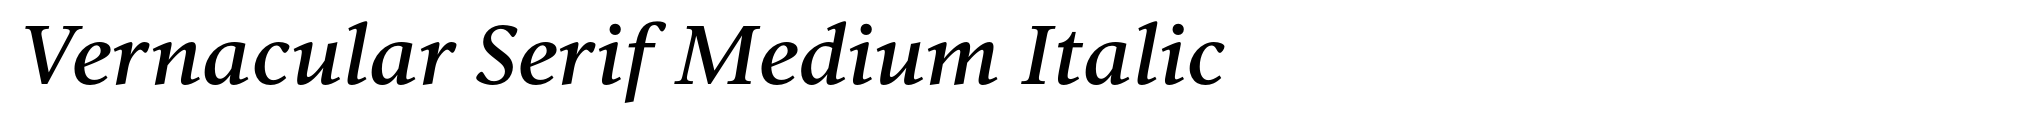 Vernacular Serif Medium Italic image